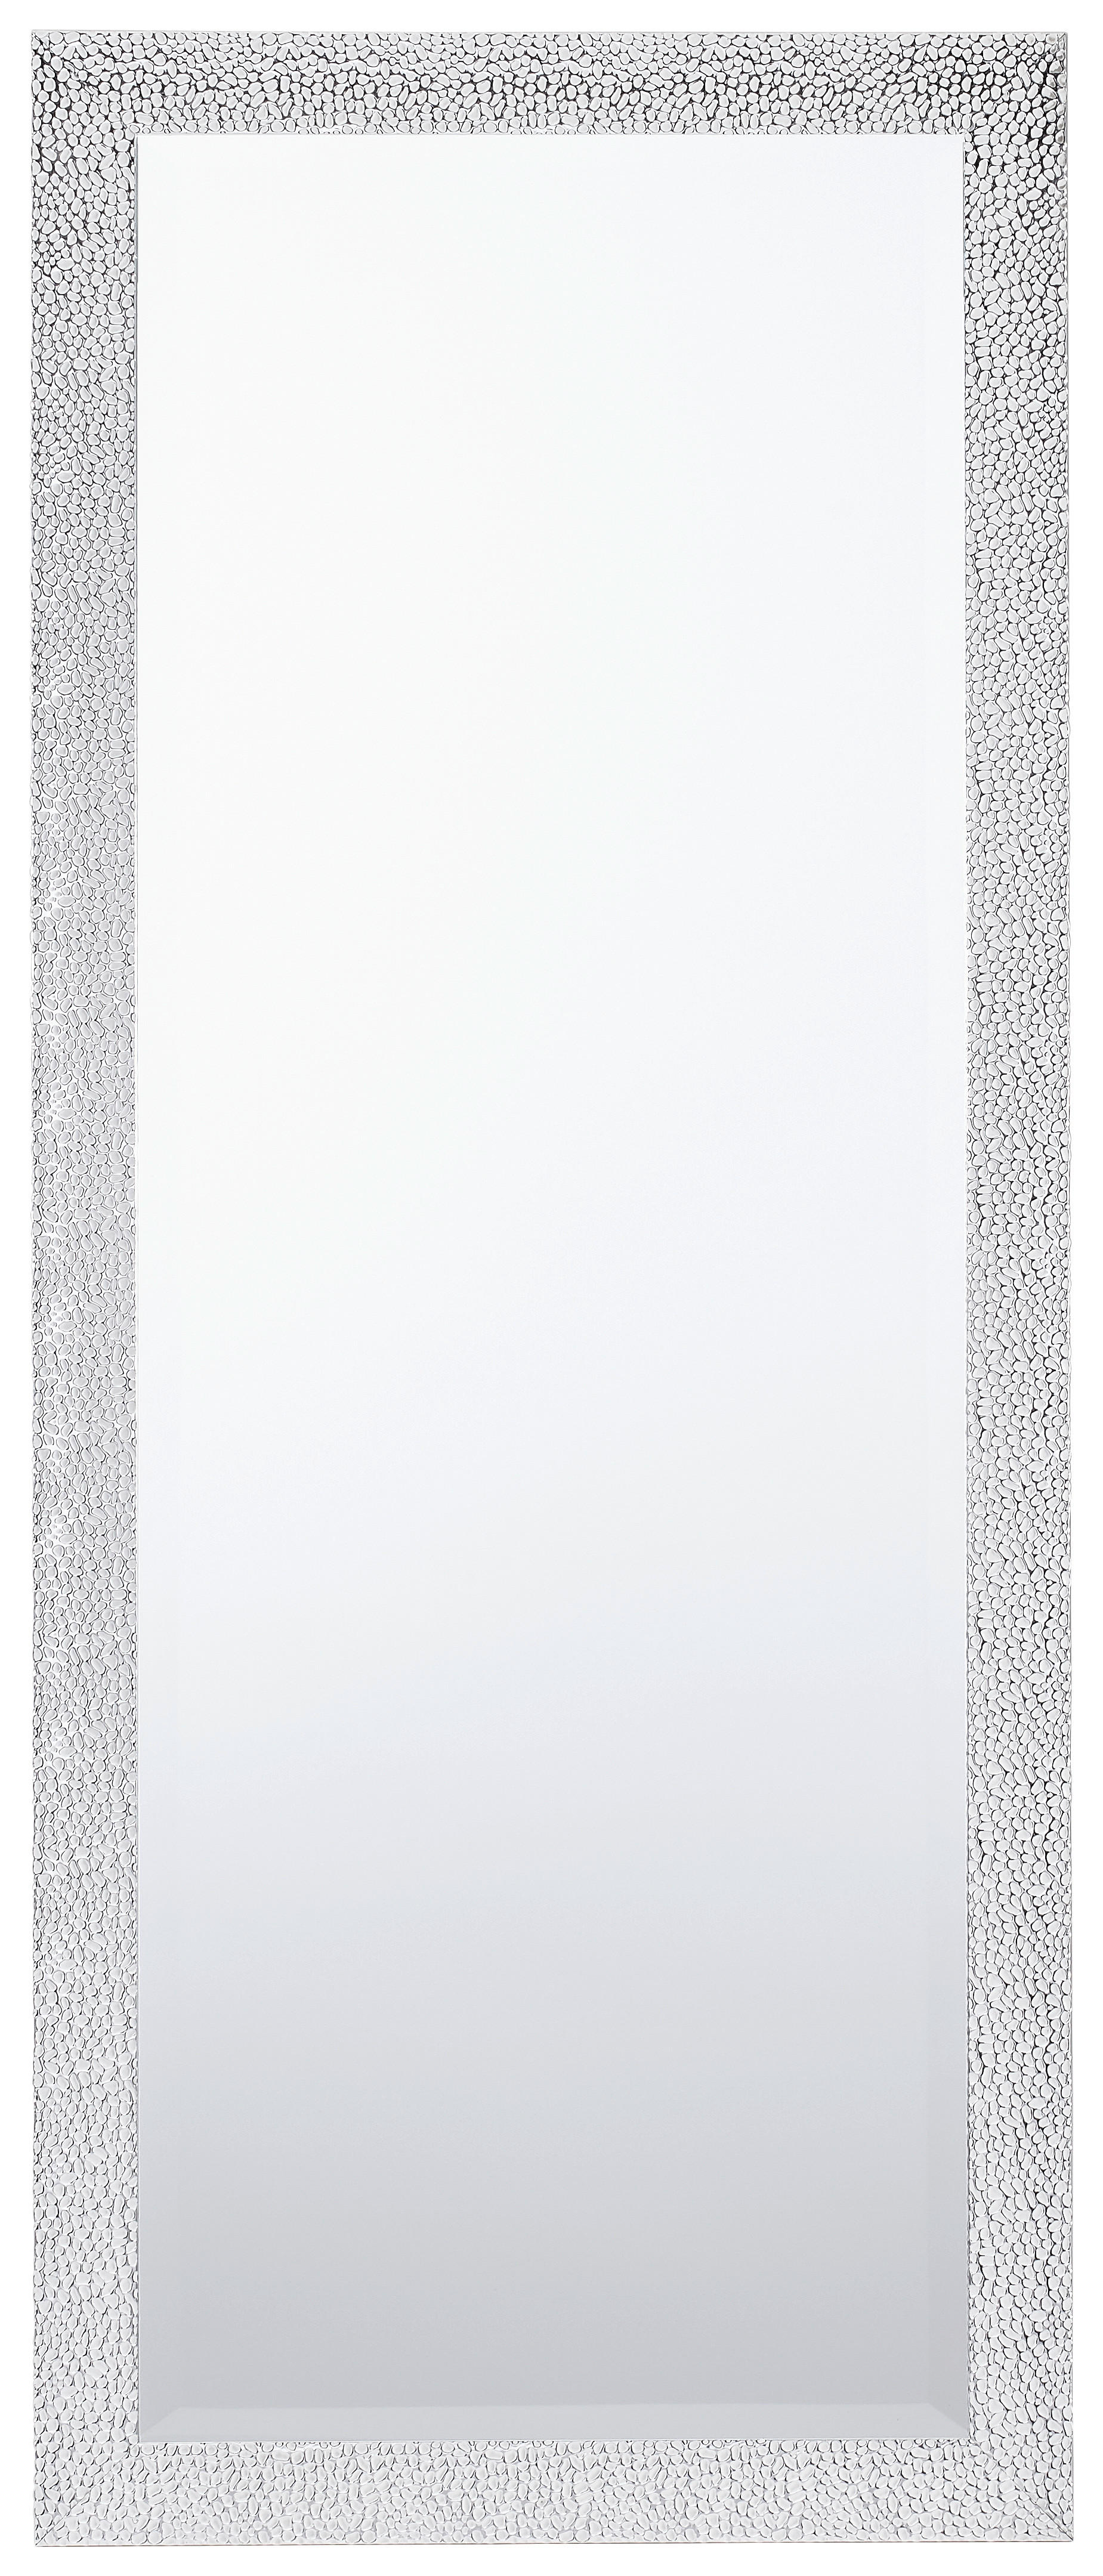 WANDSPIEGEL Silberfarben  - Silberfarben, LIFESTYLE, Glas/Kunststoff (70/170/2cm) - Carryhome